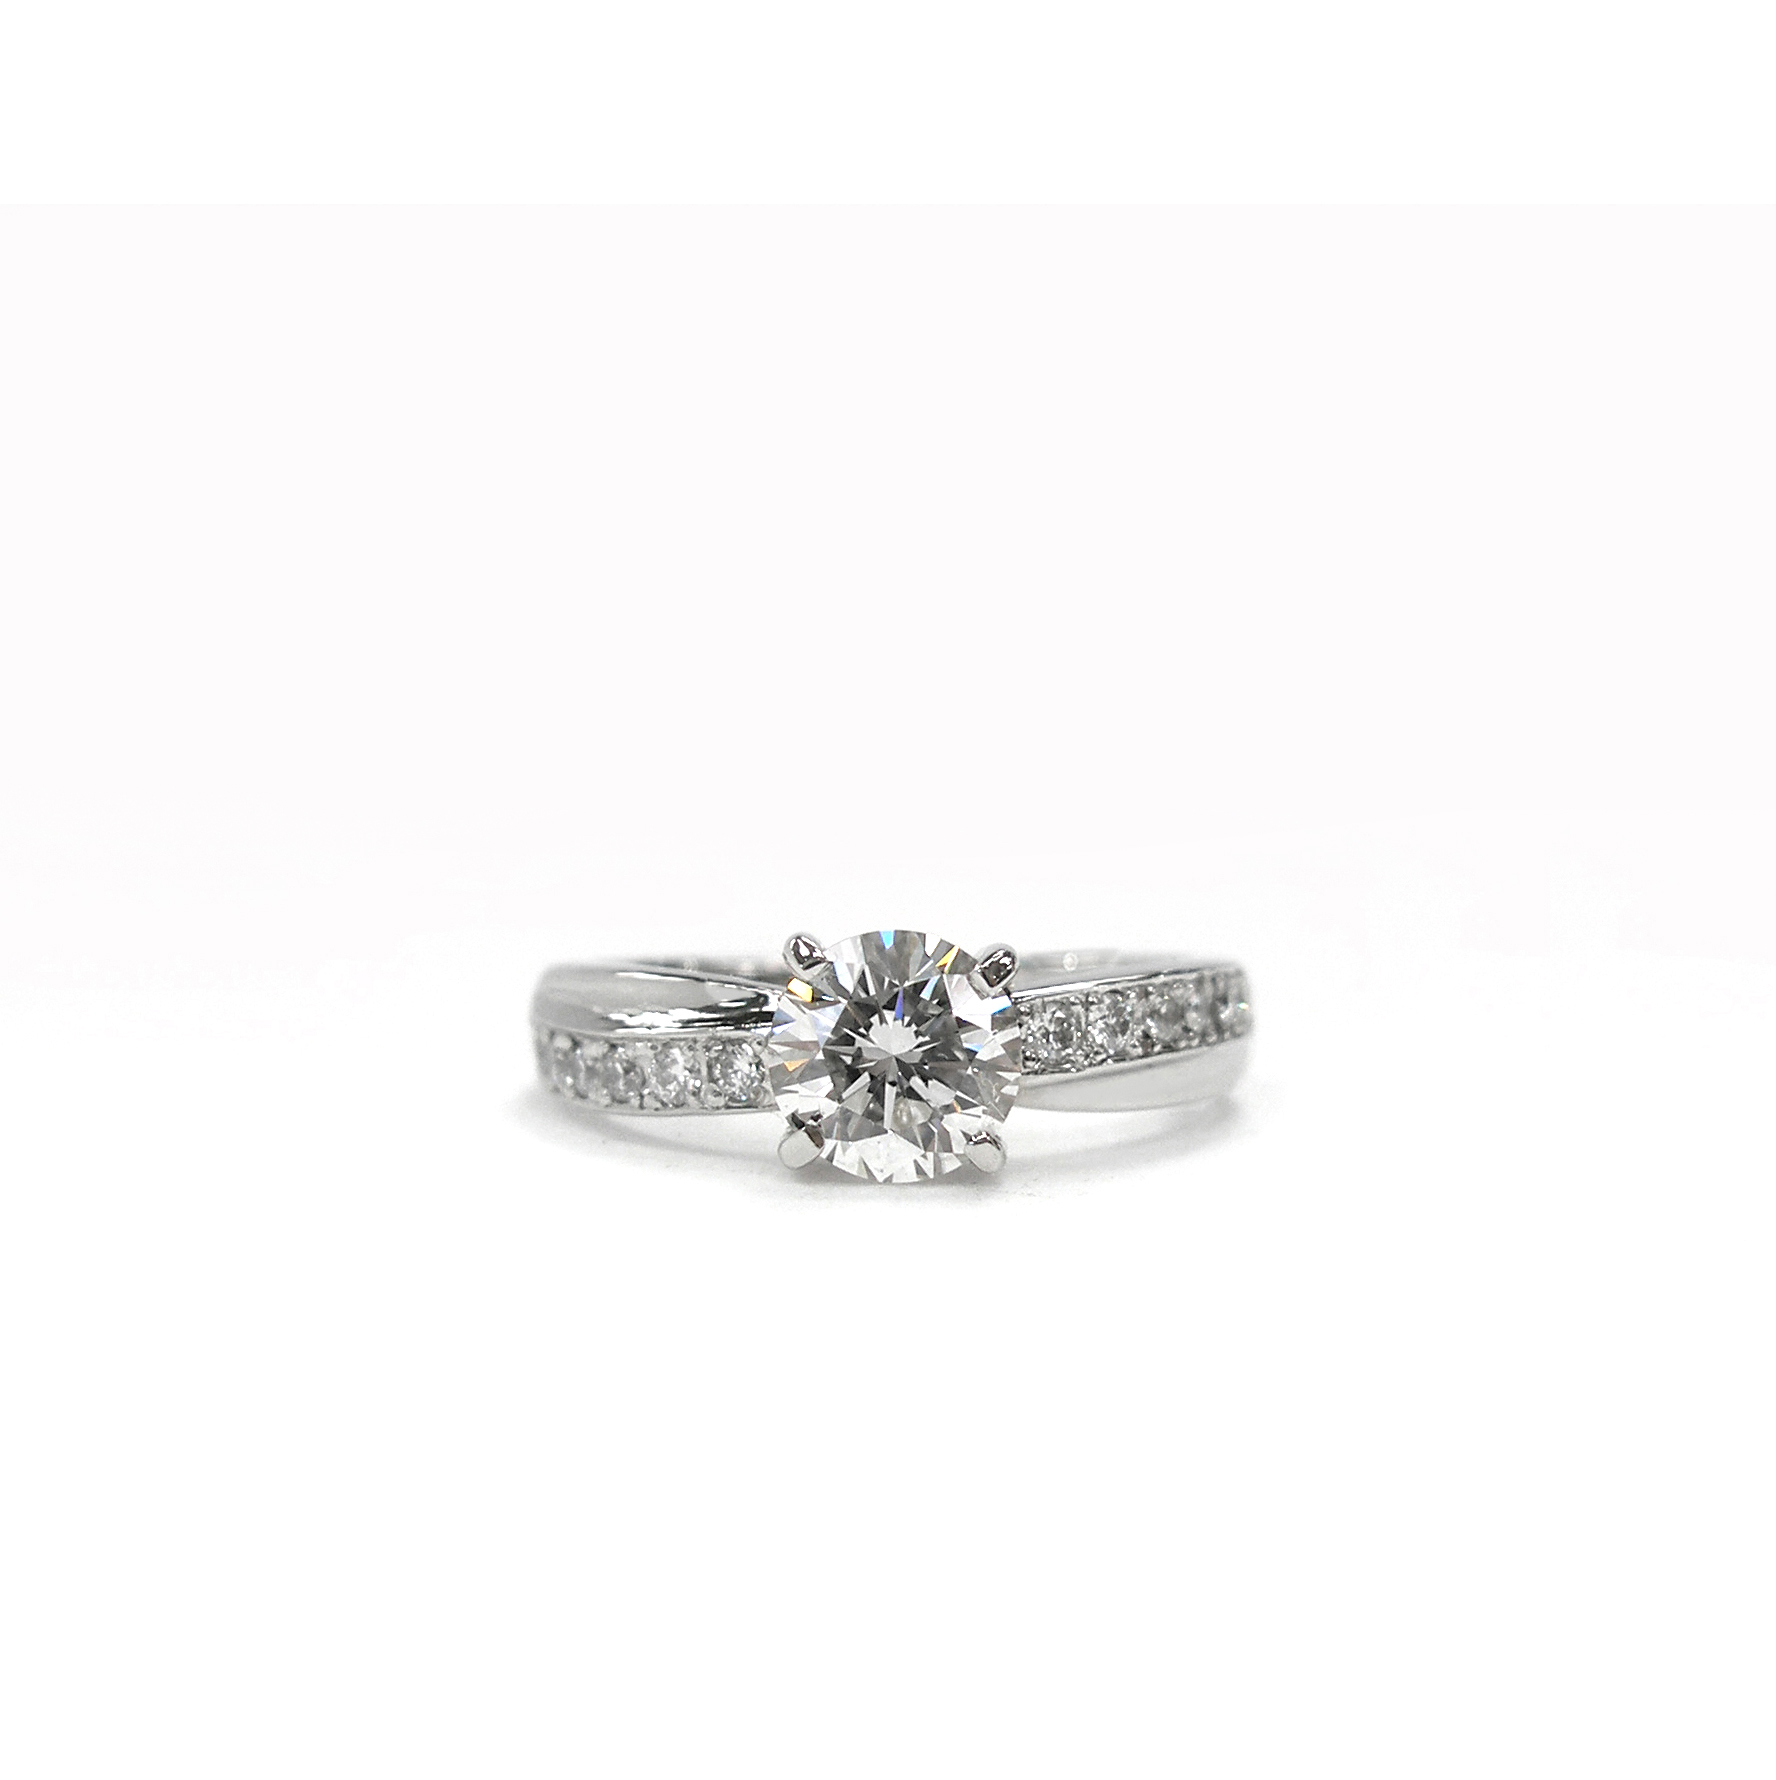 受け継がれるダイヤモンド。お母さまからご自身の婚約指輪を手渡され、お嫁さんに贈る婚約指輪にジュエリーリフォーム